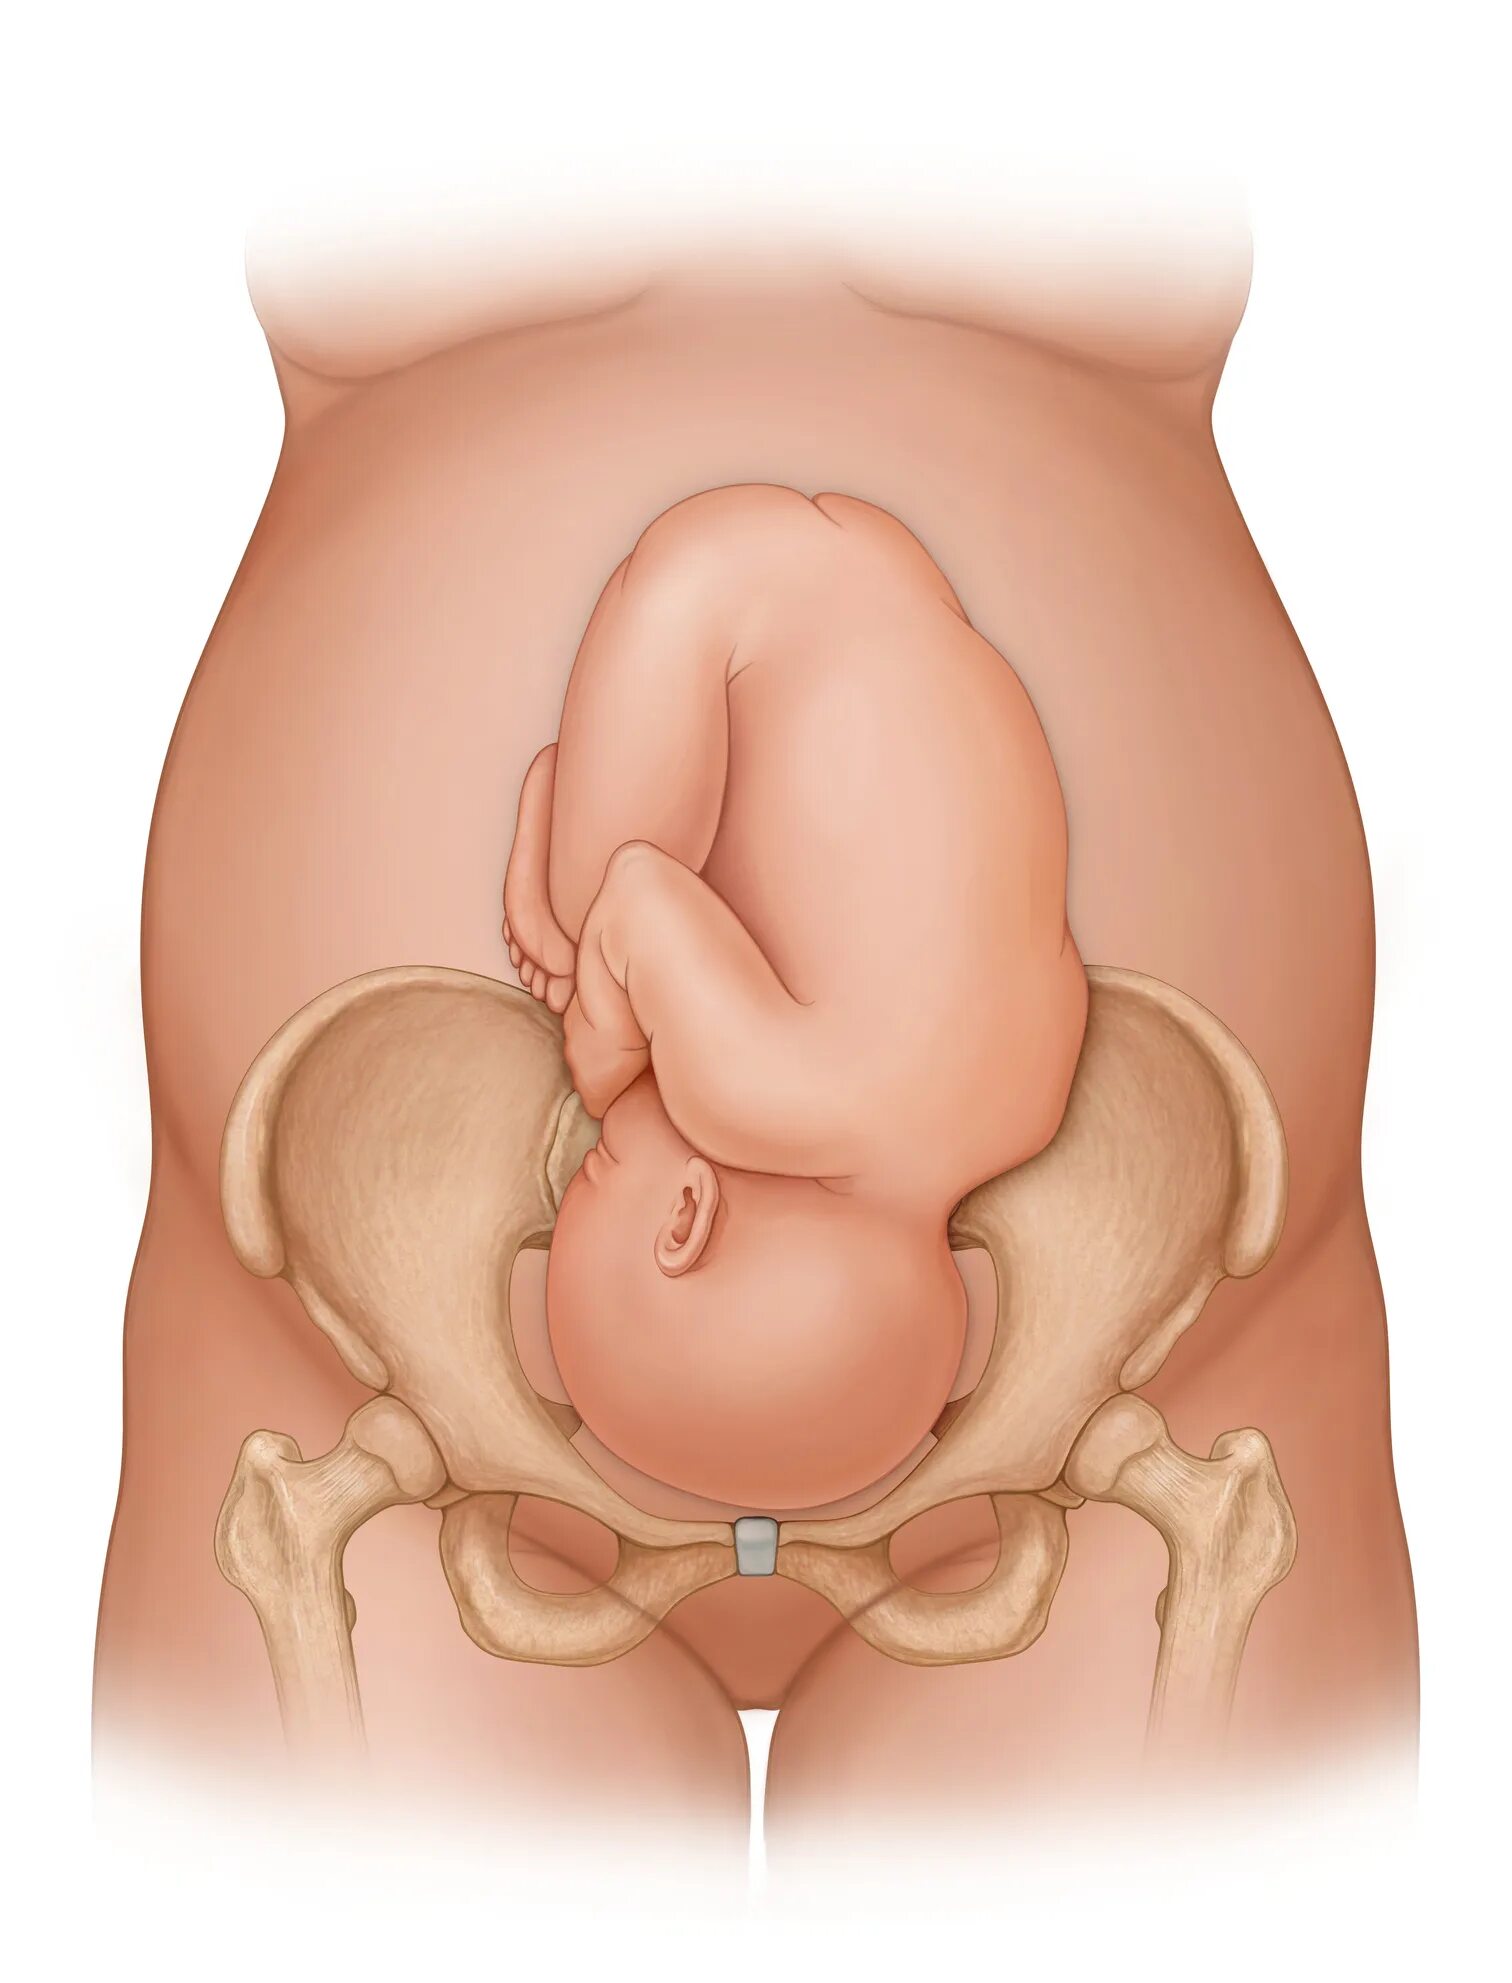 Лобковые кости при беременности. Расширение таза при родах. Расширение таза при беременности. Тазовые кости при родах. Тазовое 32 недели